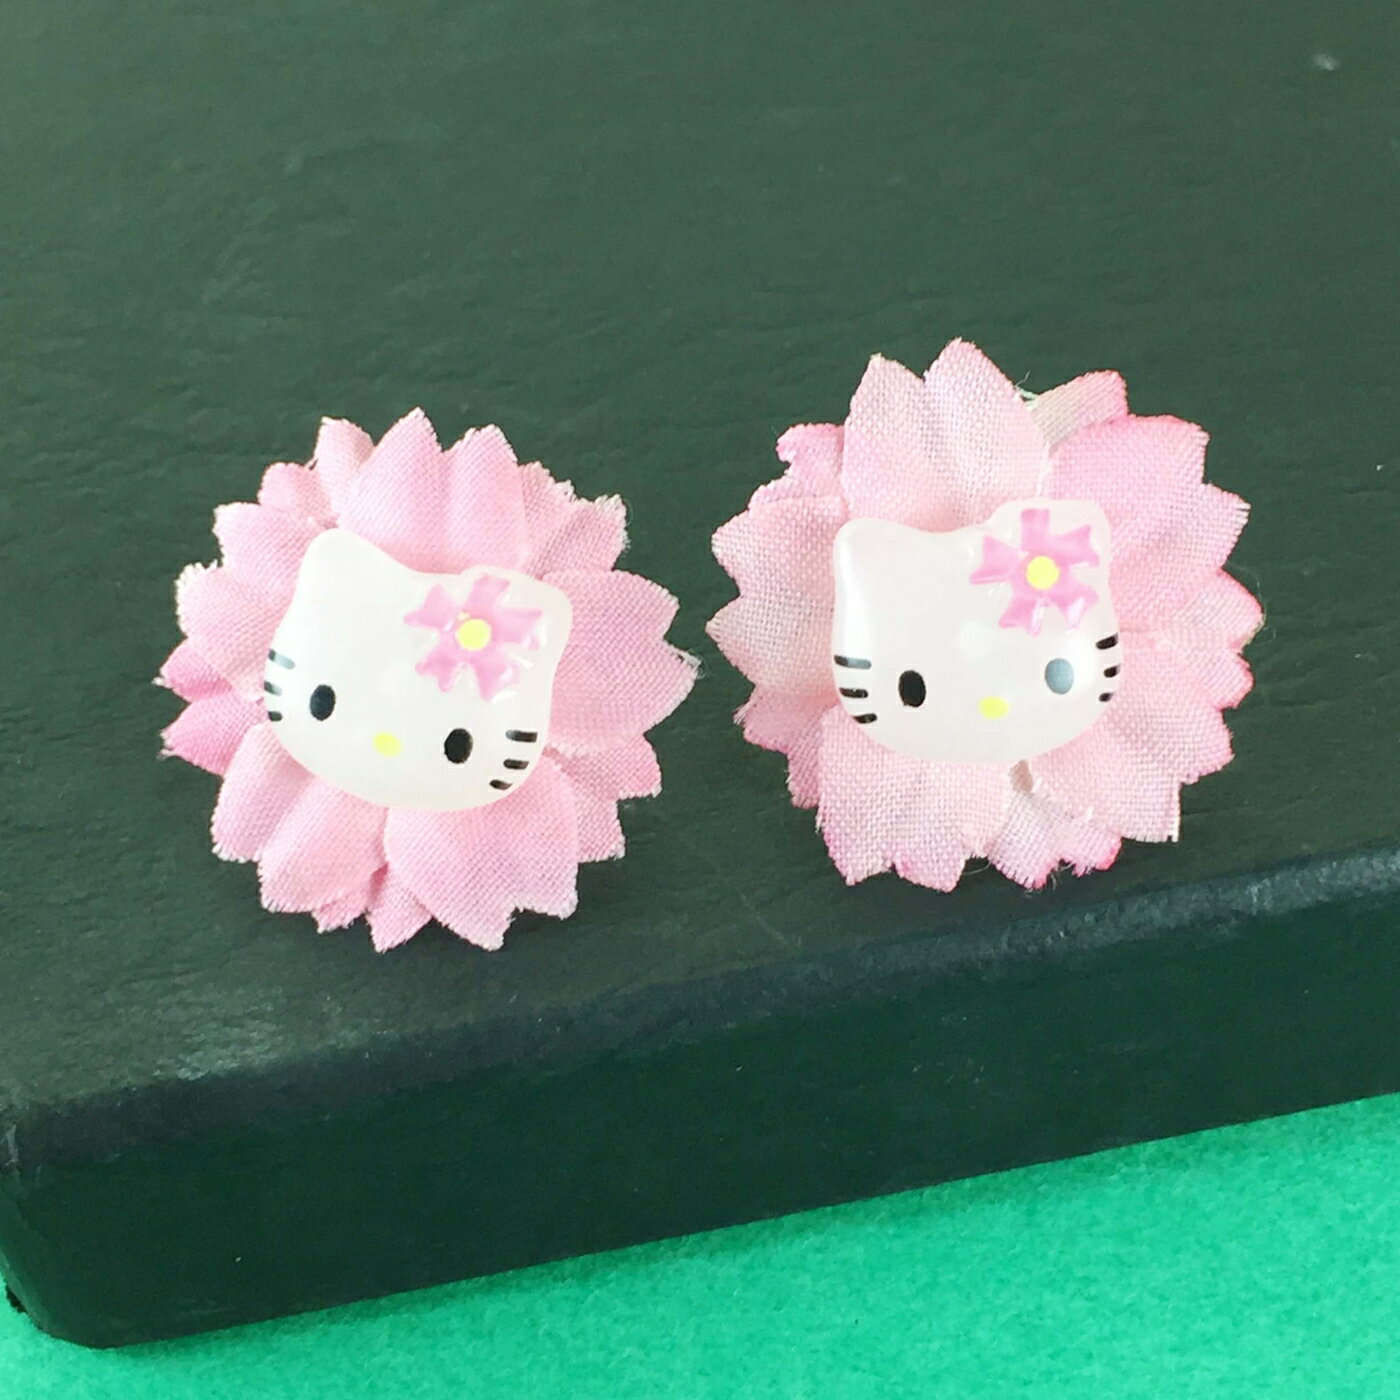 【震撼精品百貨】Hello Kitty 凱蒂貓 耳環-粉花造型 震撼日式精品百貨